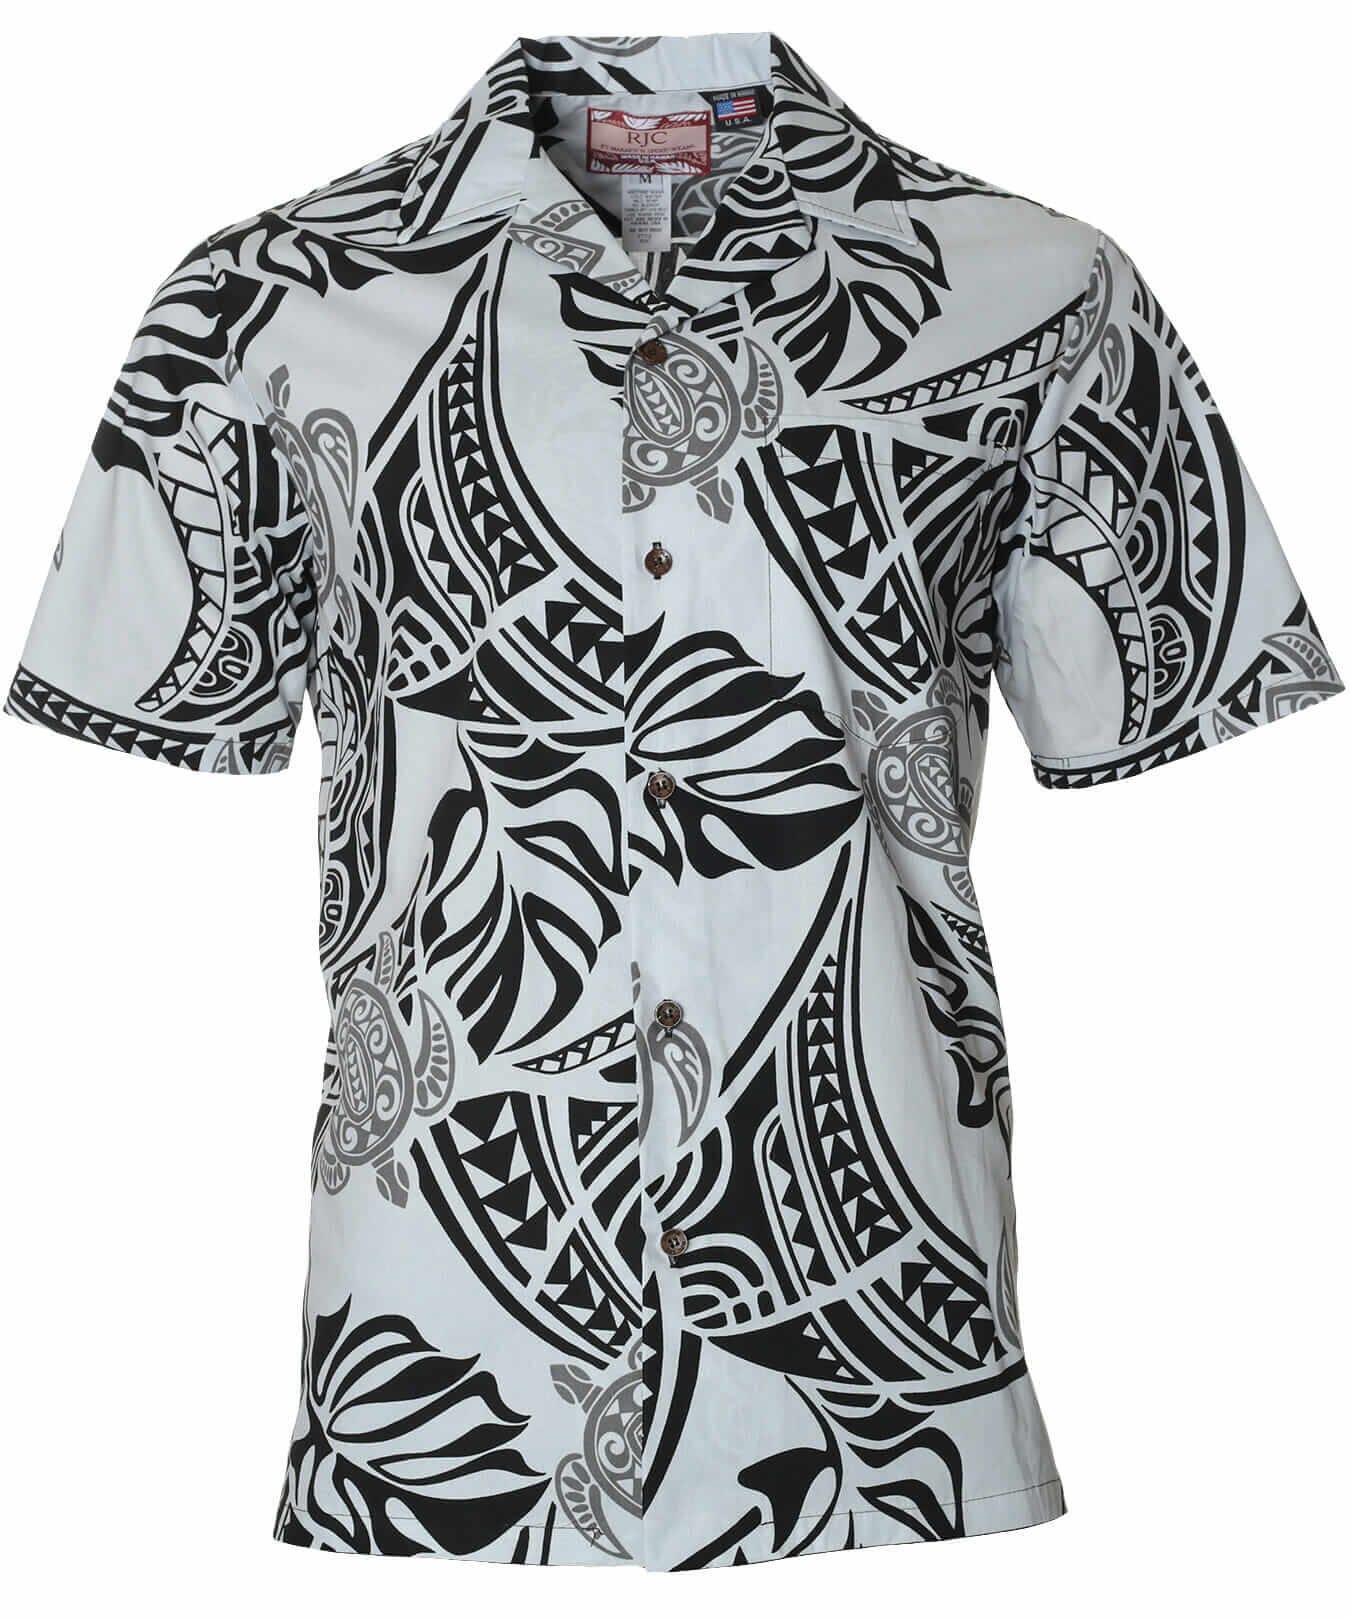 Tribal South Pacific Aloha Shirt Gray